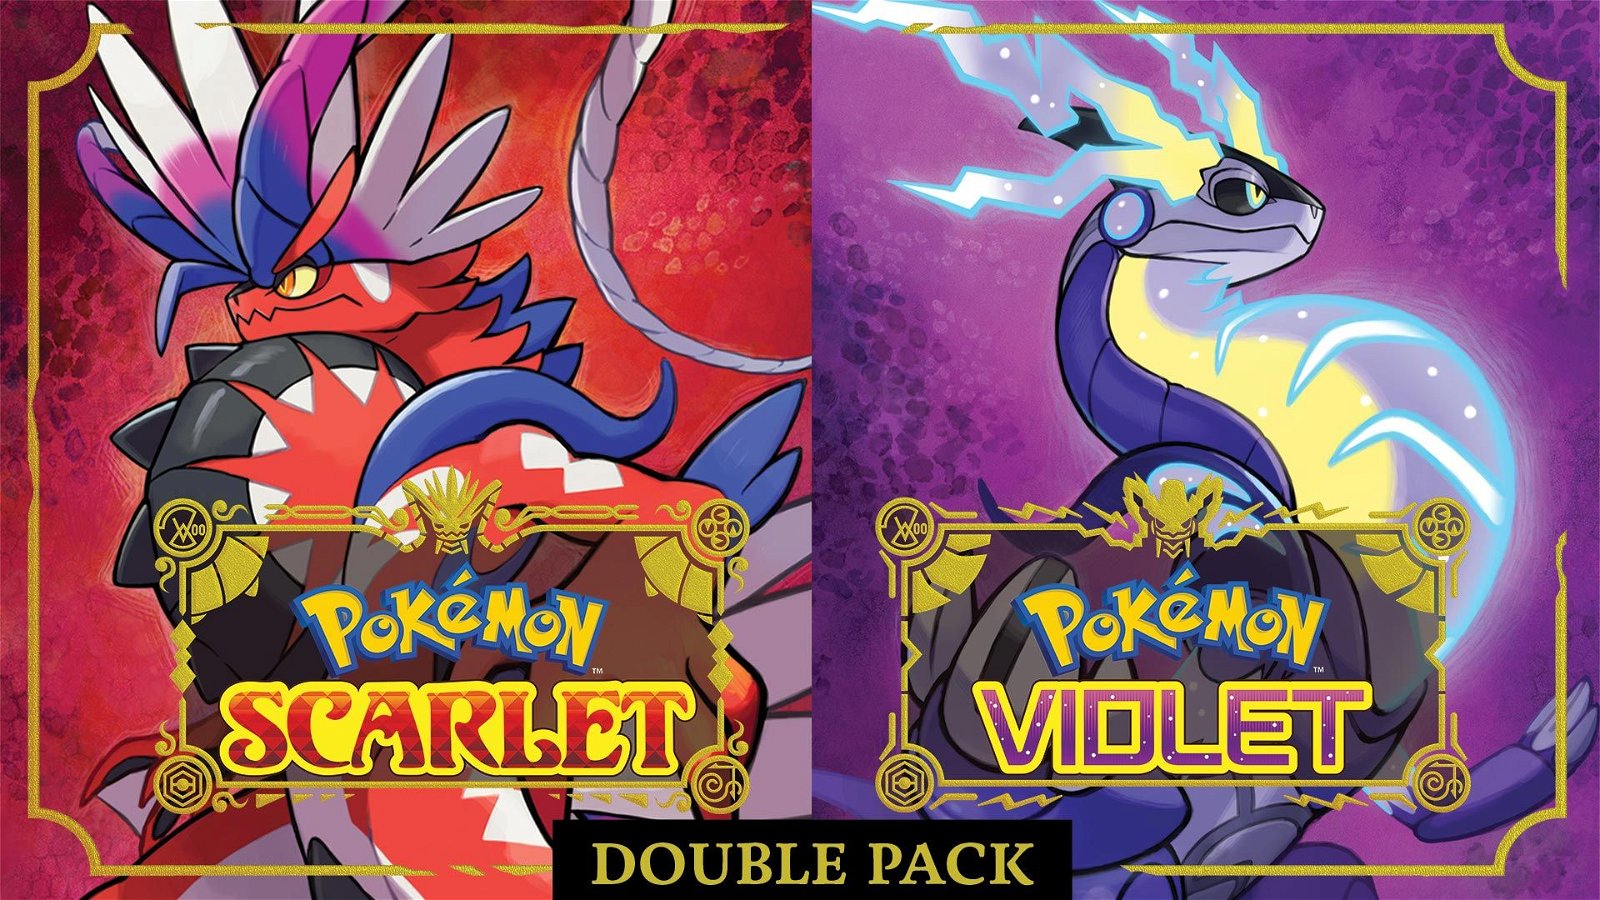 Image of Pokémon Scarlet and Pokémon Violet Double Pack